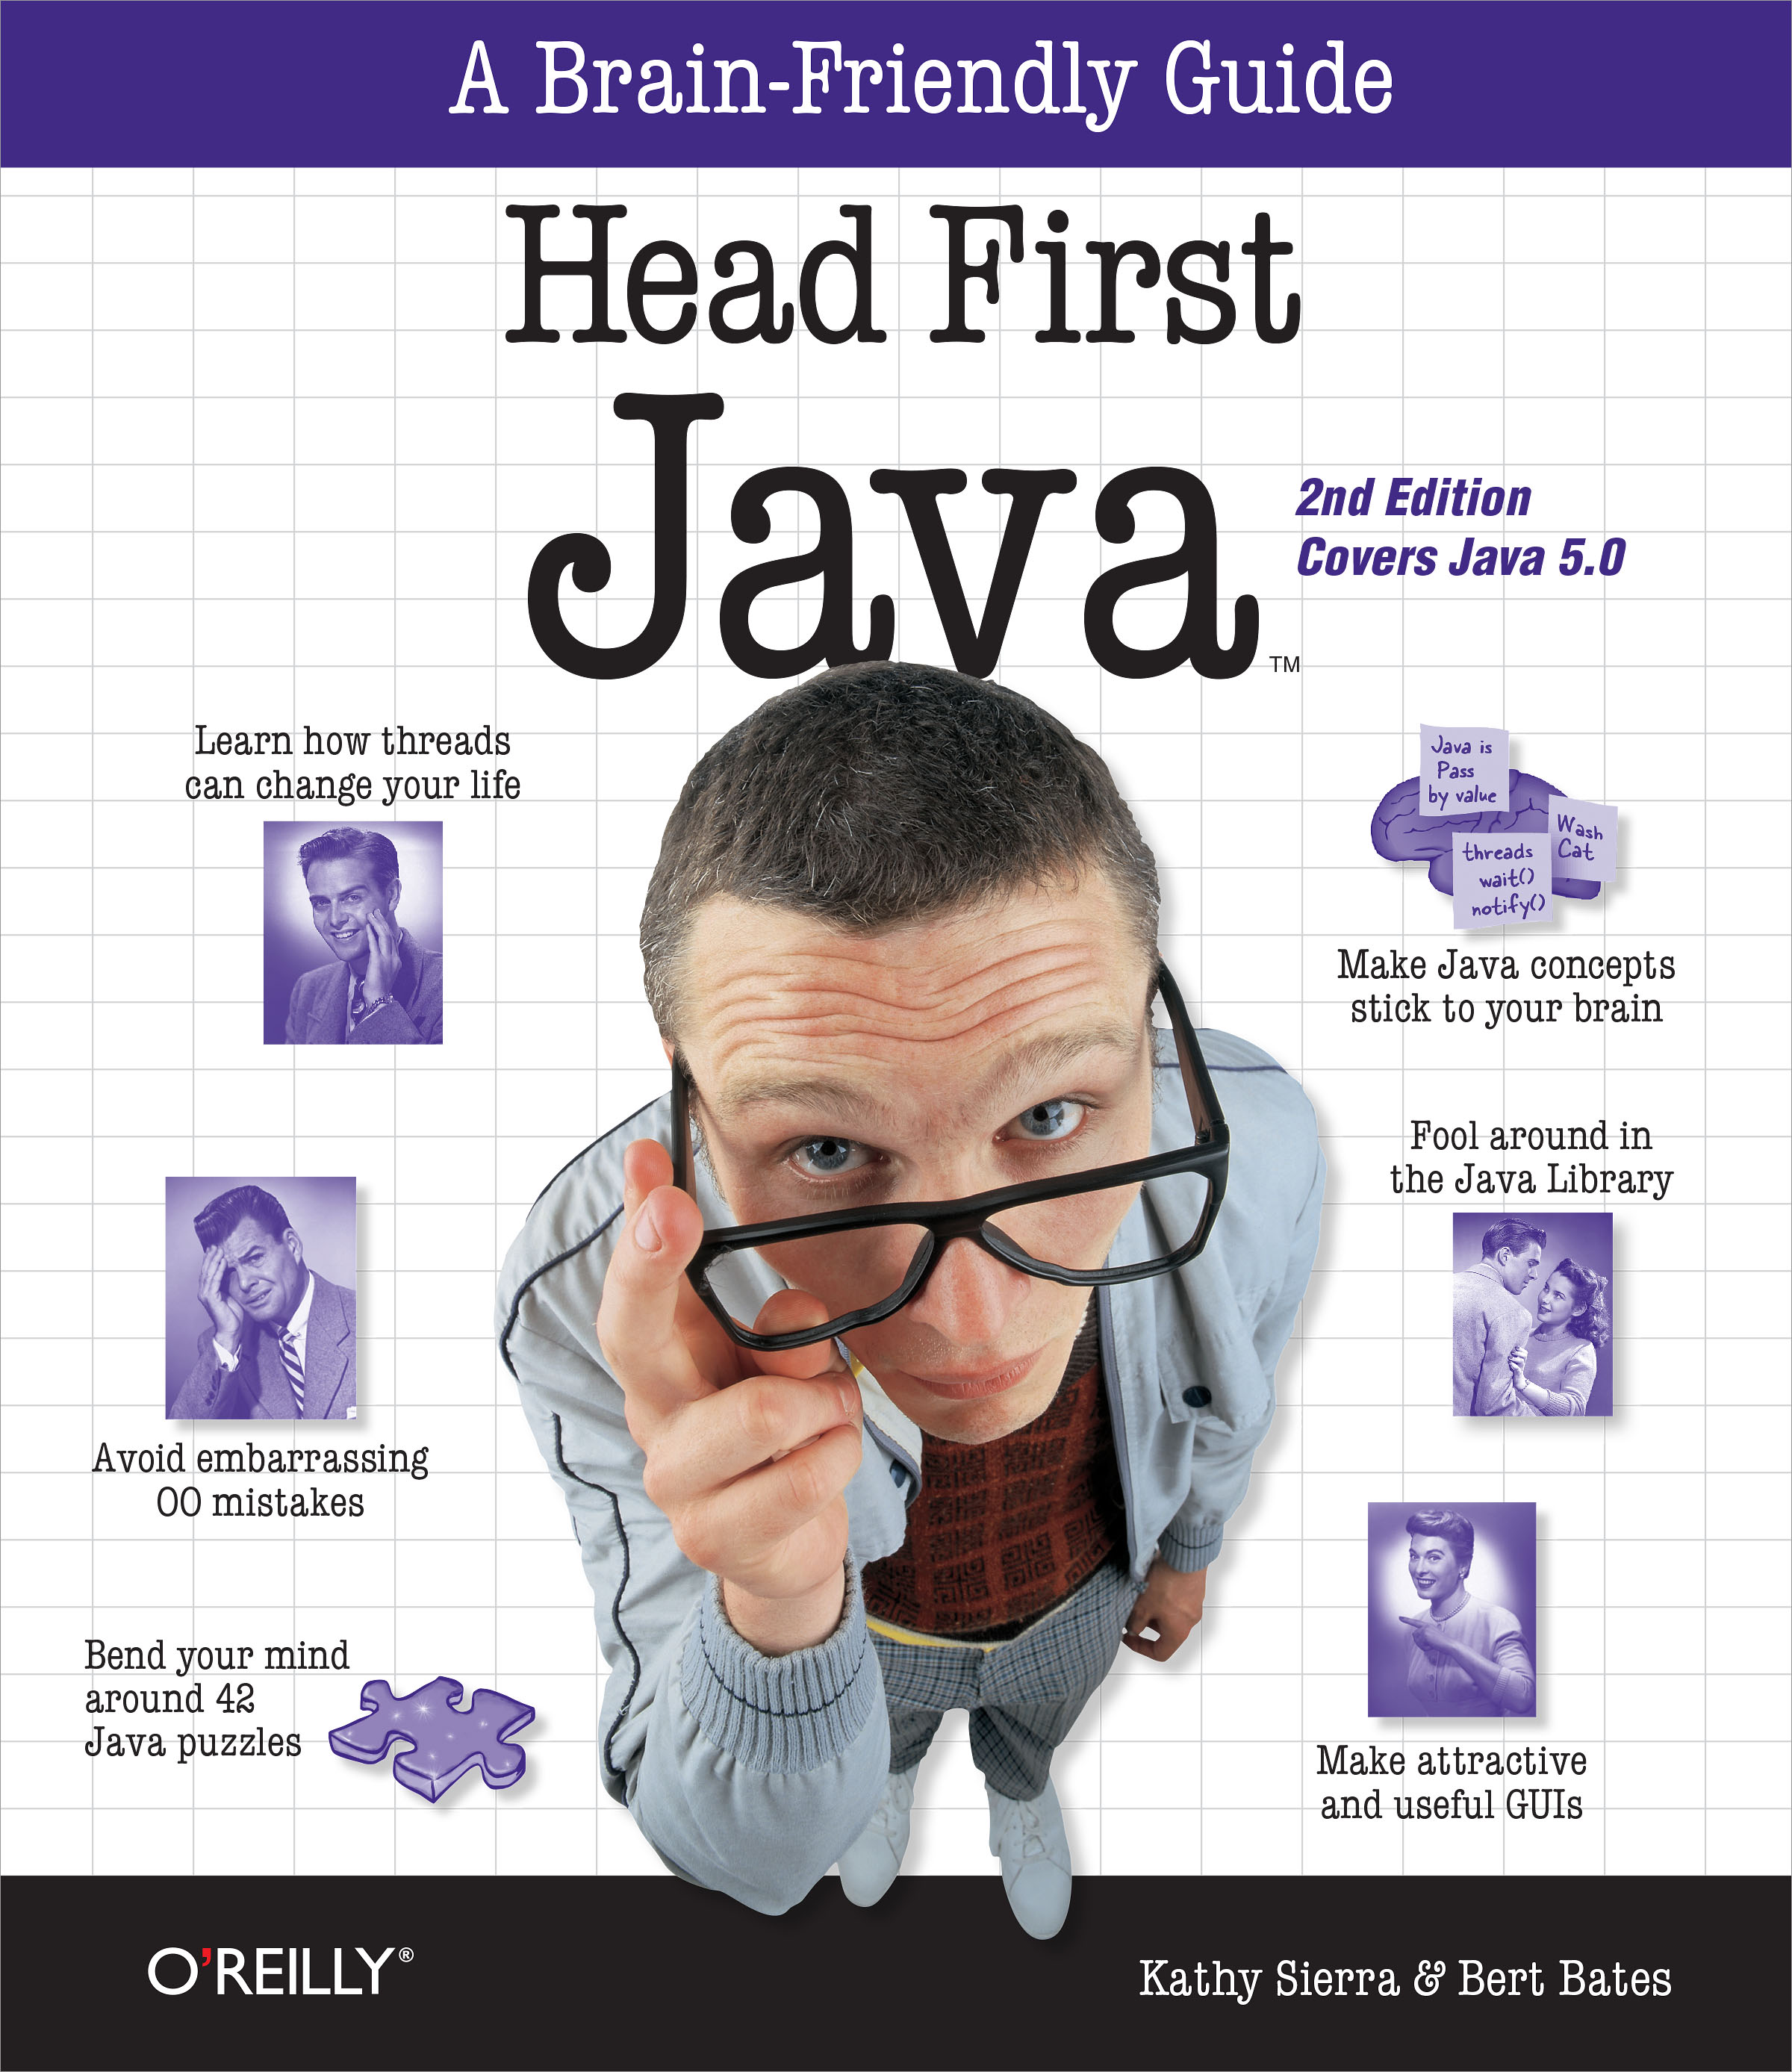 Head First Java™